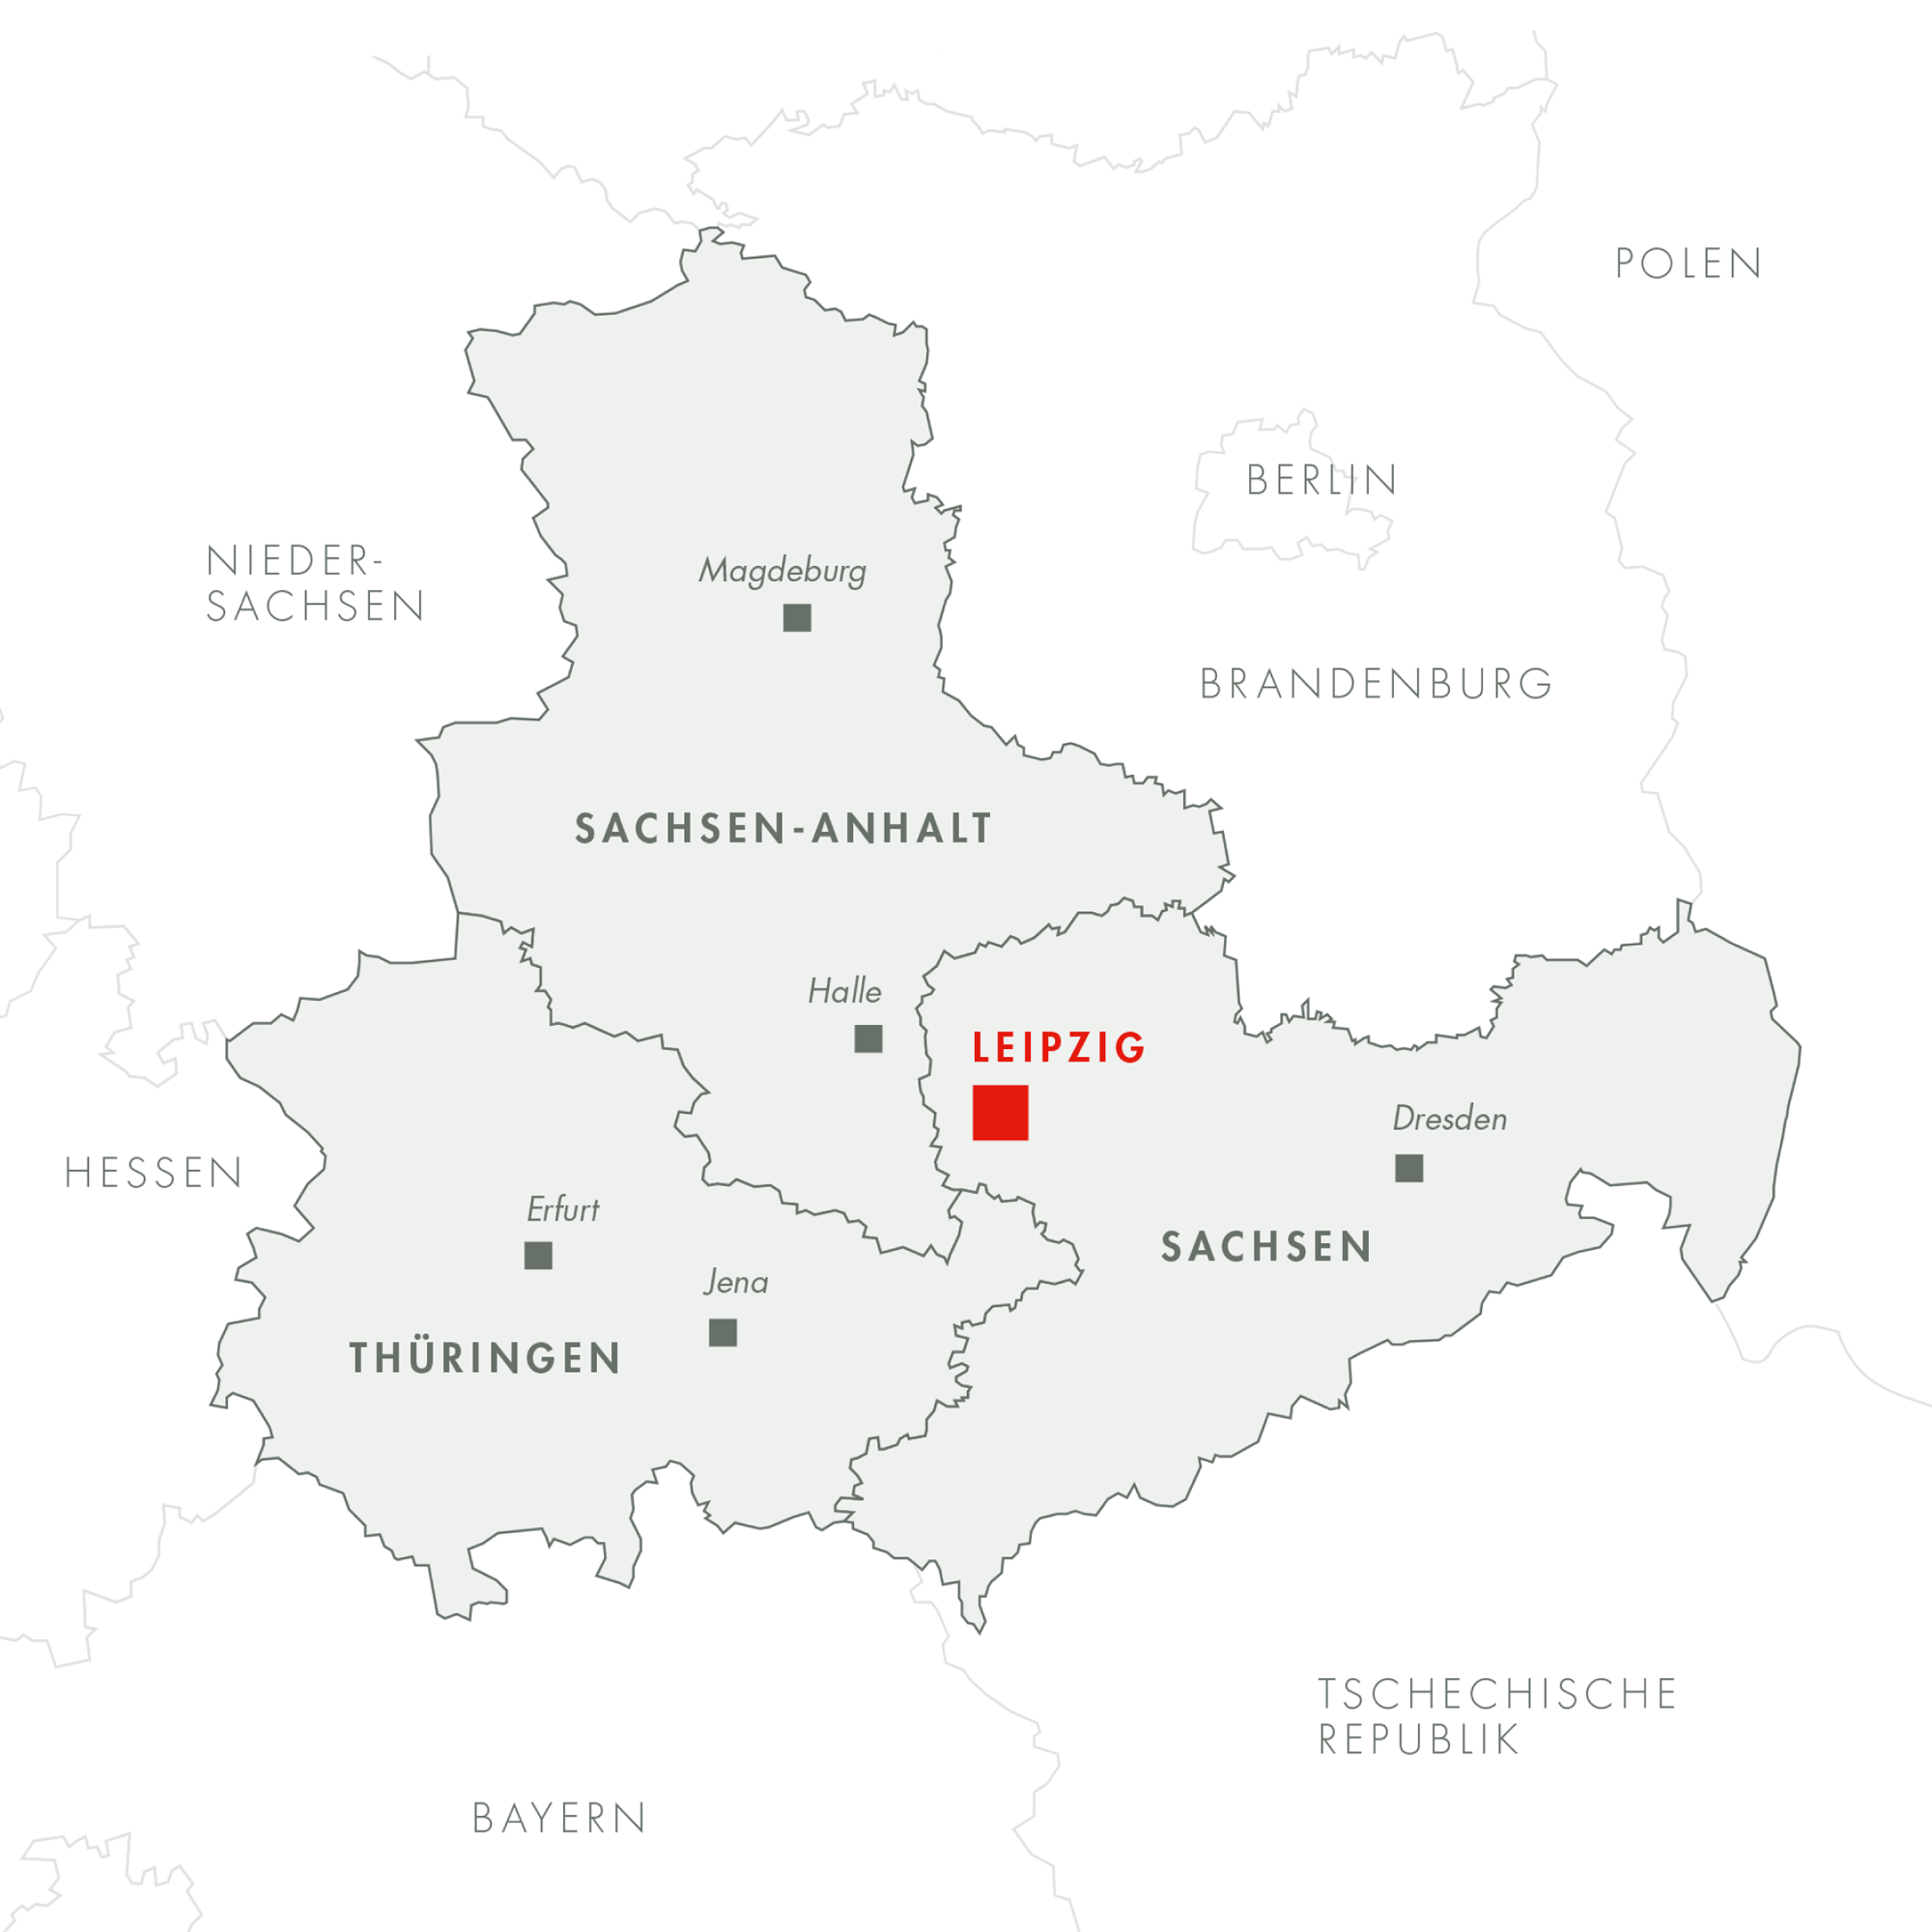 Lage in Mitteldeutschland